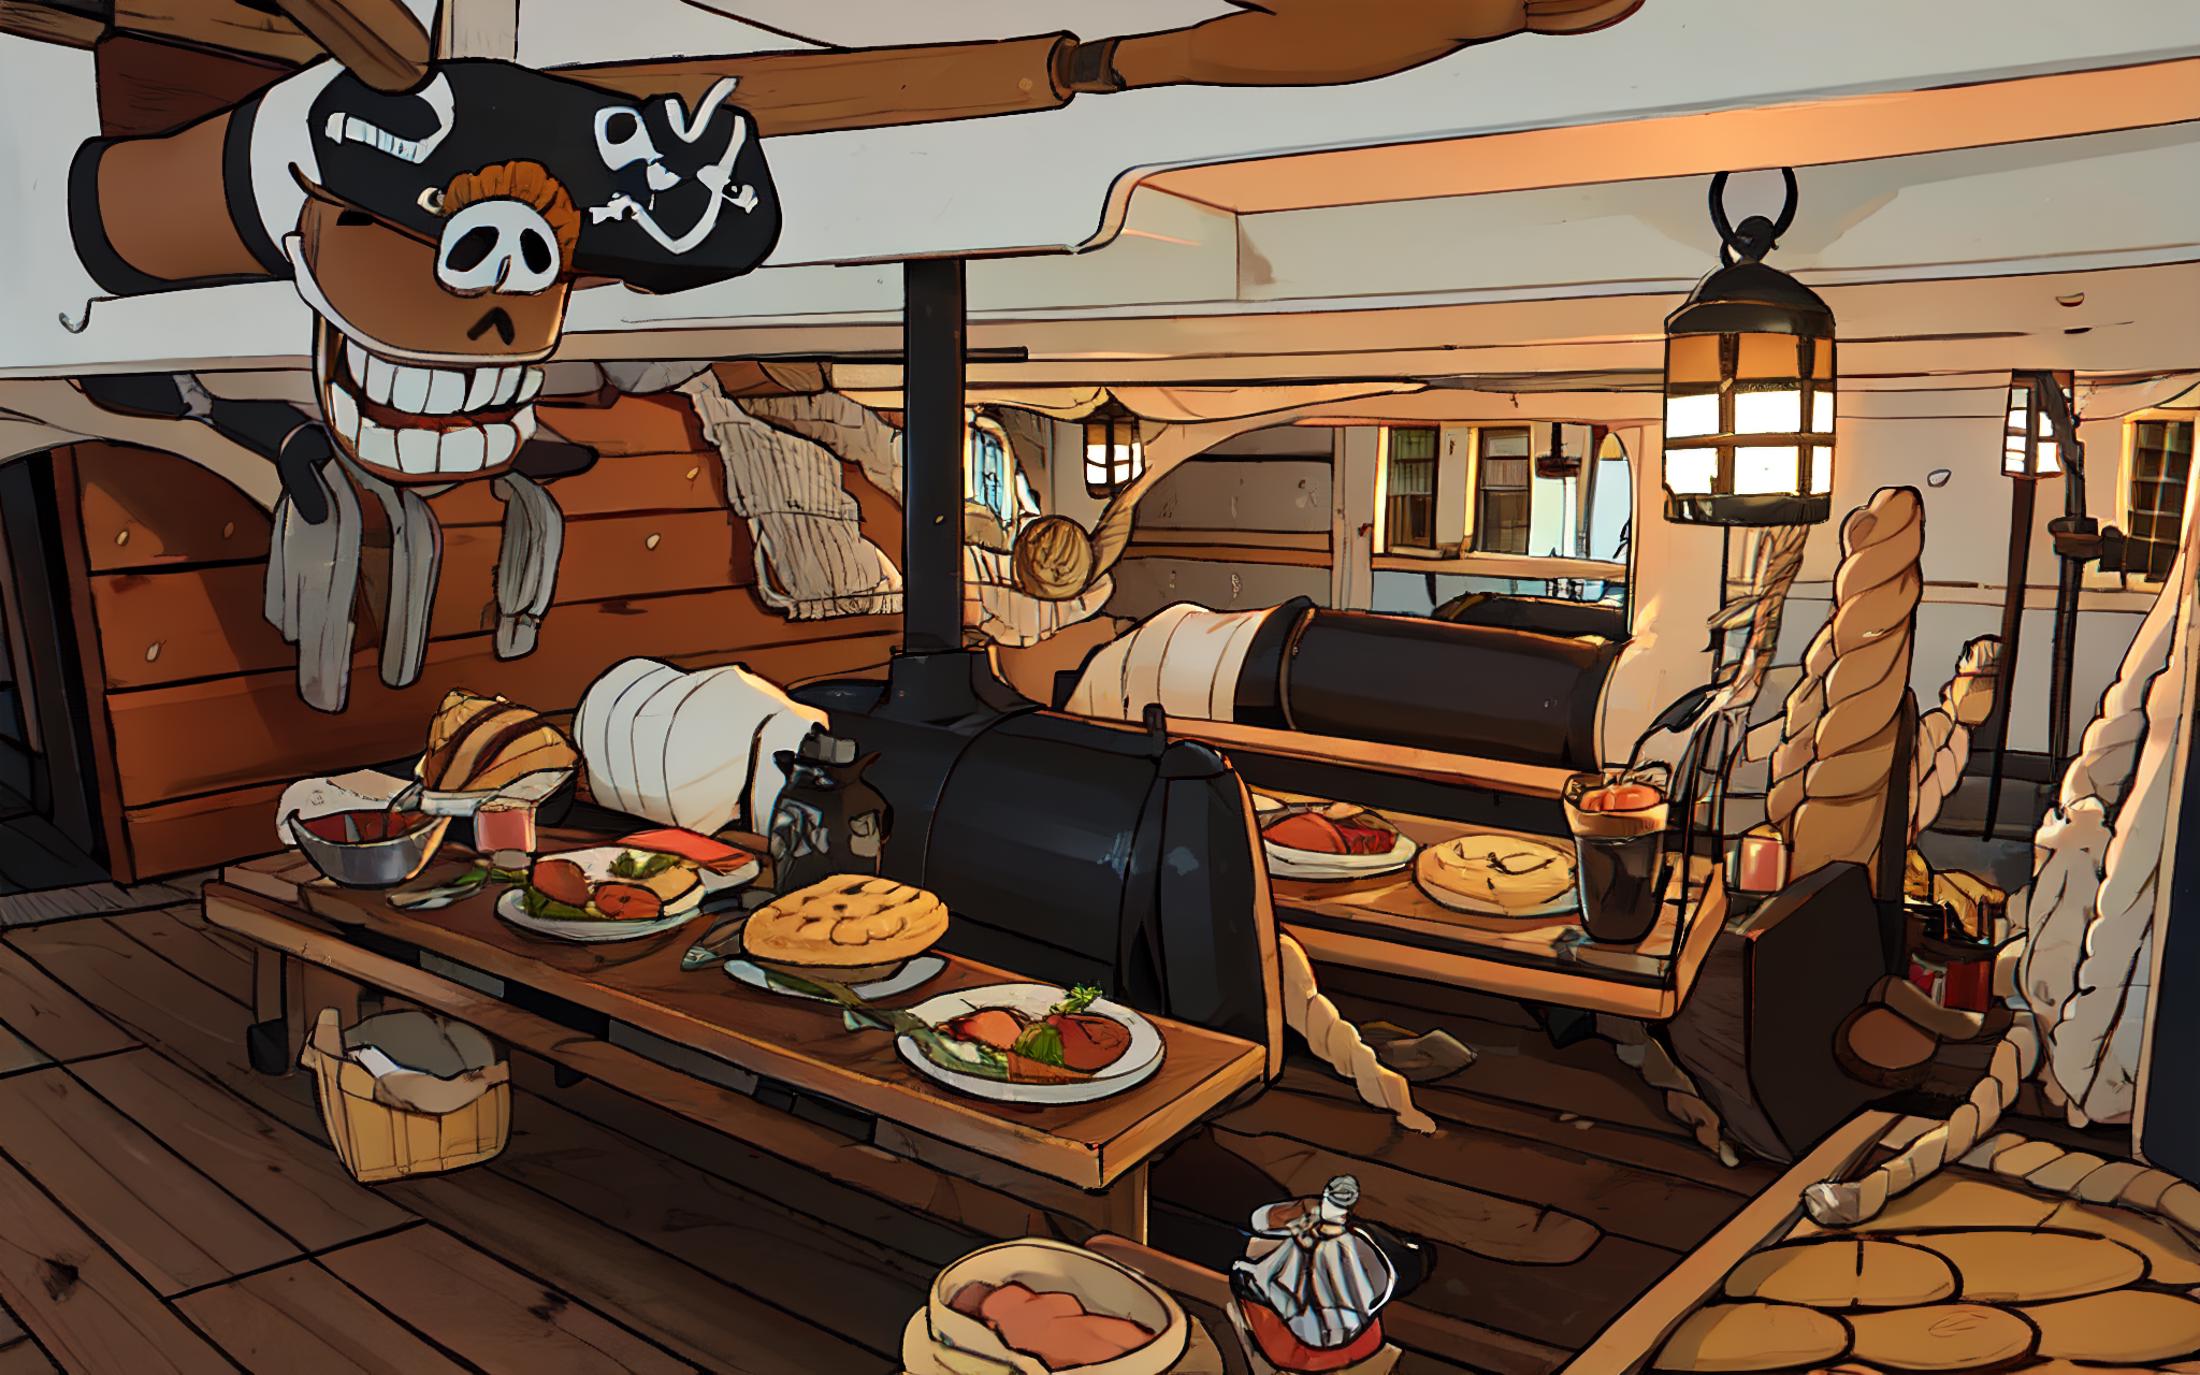 Wooden Warship Interior image by MajMorse